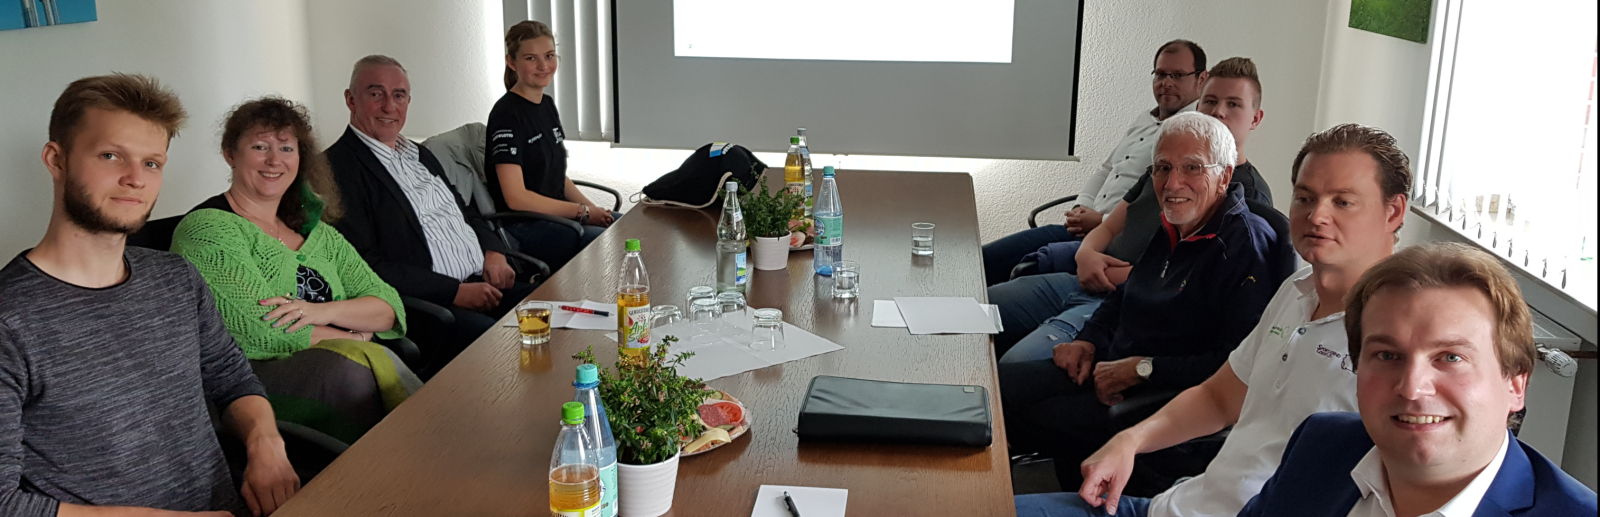 Staatssekretärin Andrea Milz mit Mitgliedern des Kreissportbundes Coesfeld an einem langen Tisch sitzend.